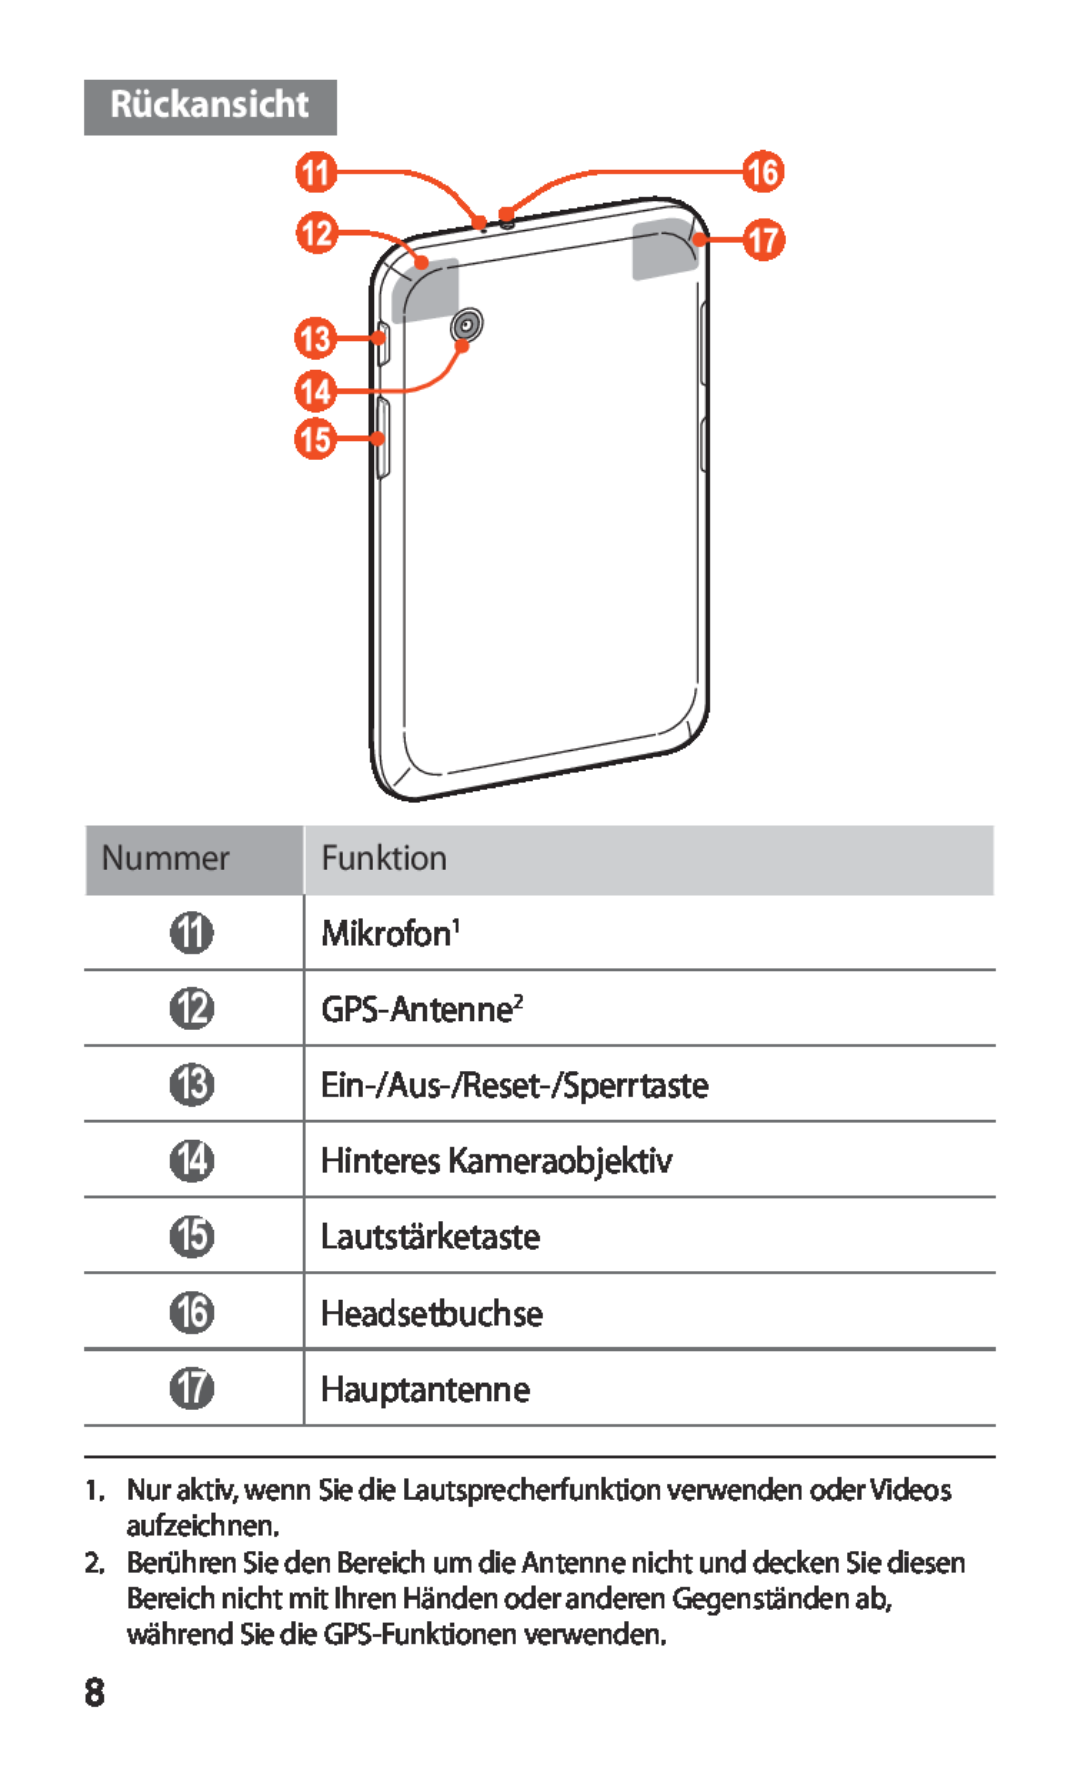 Samsung GT-P3100TSAATO Rückansicht, Nummer, Funktion, Mikrofon1, GPS-Antenne2, Ein-/Aus-/Reset-/Sperrtaste, Headsetbuchse 